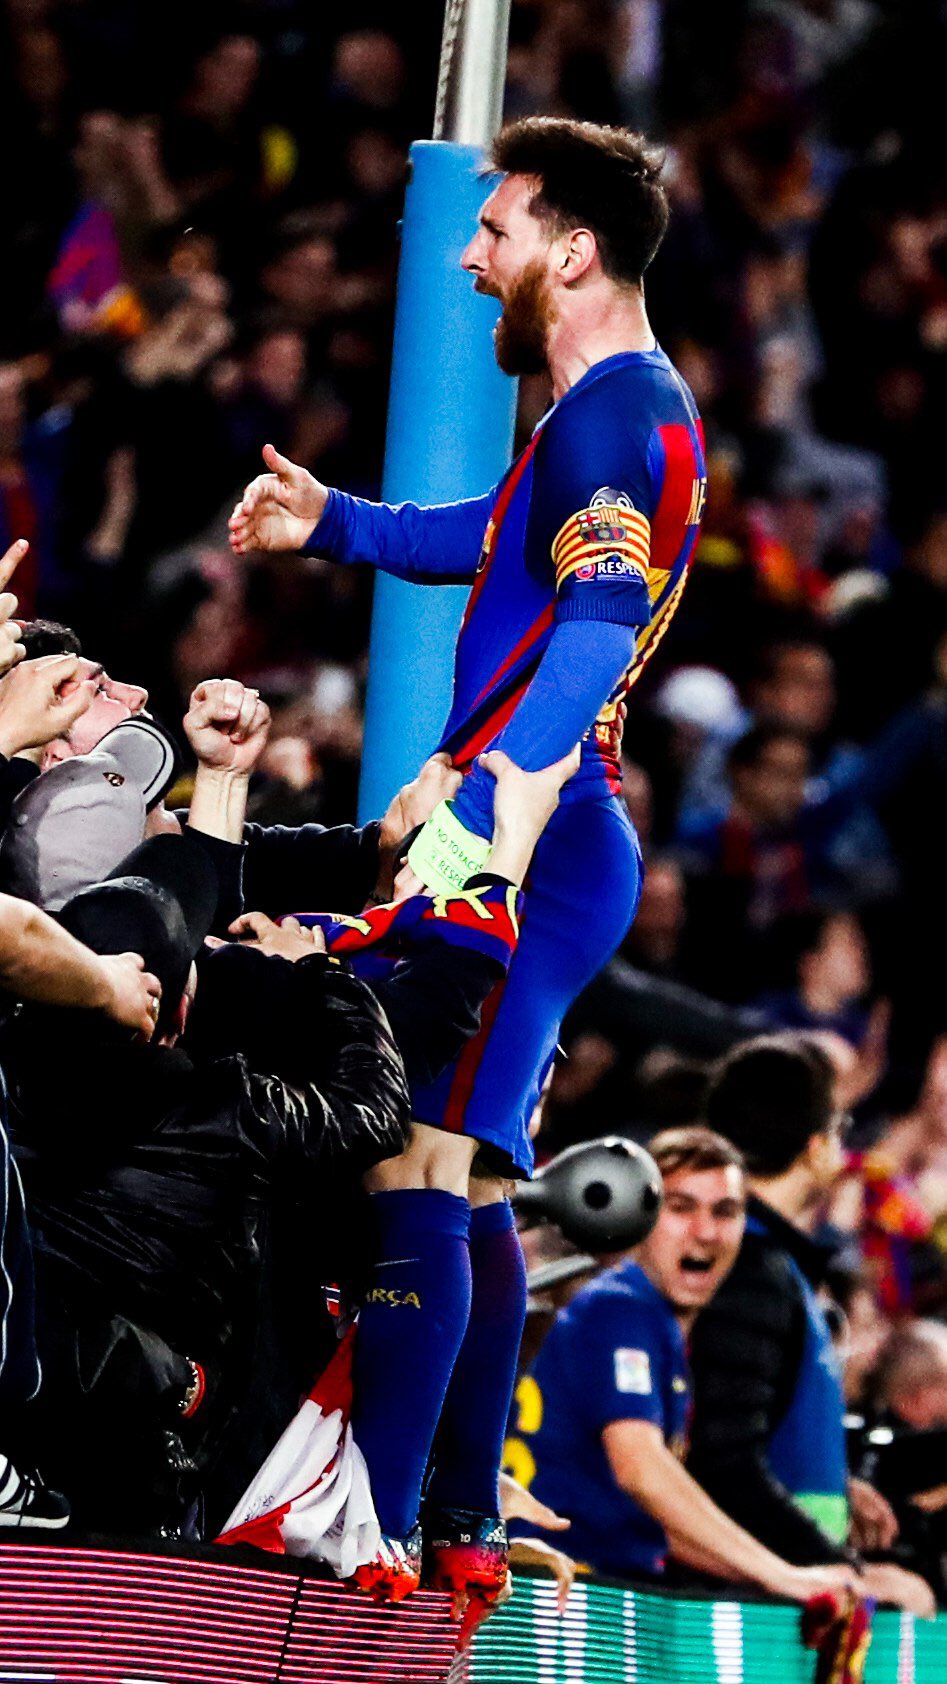 Hãy tải ngay hình nền của Messi để cập nhật những khoảnh khắc tuyệt vời nhất của siêu sao bóng đá thế giới này. Những bức ảnh đẹp mắt với Messi trong đội của CLB Barcelona hoặc PSG chắc chắn sẽ làm các fan hâm mộ phải ngưỡng mộ.